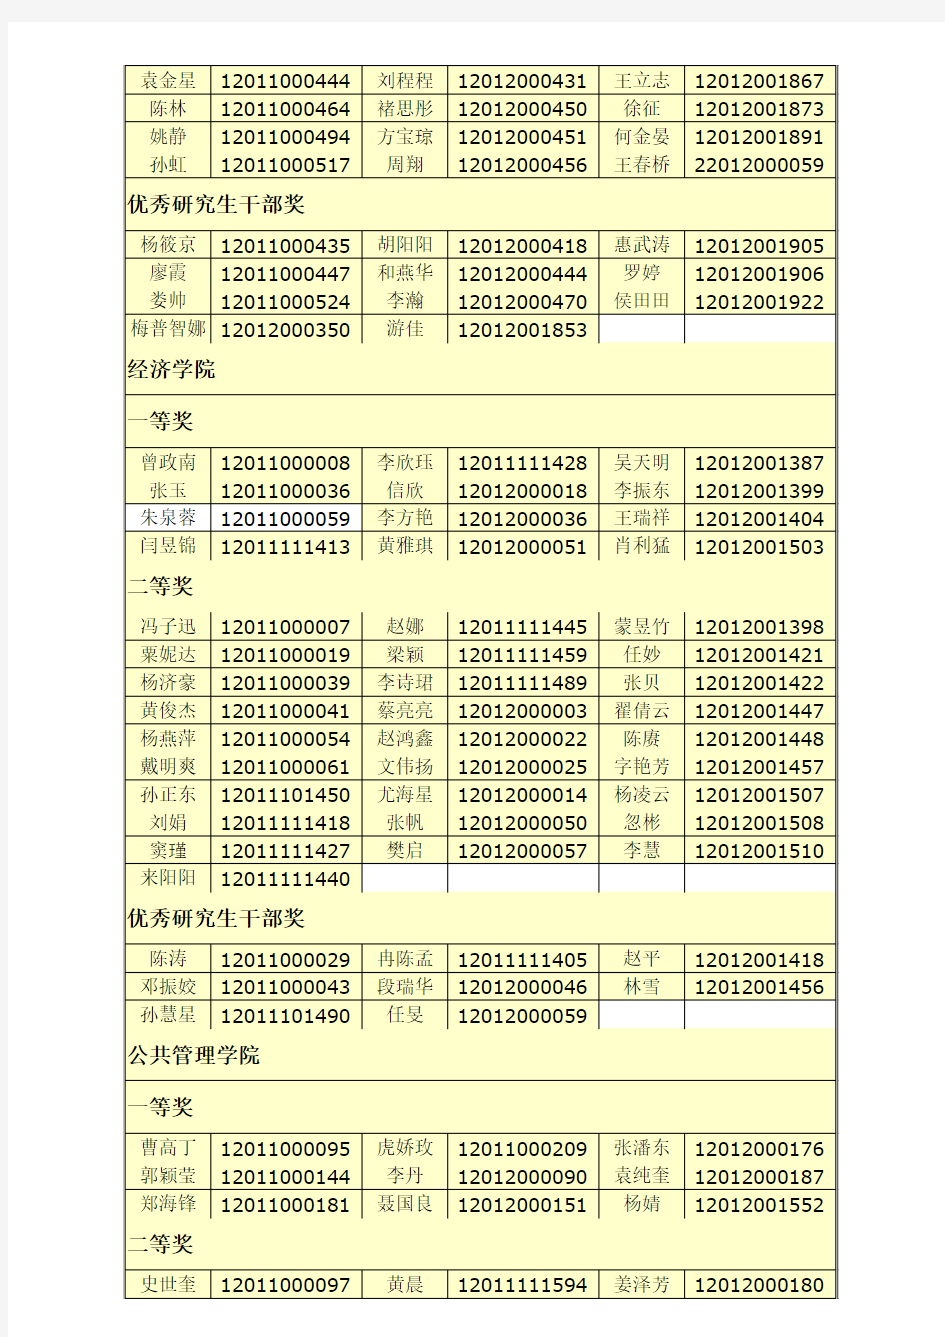 2013年云南大学研究生校级奖学金拟获奖名单公示